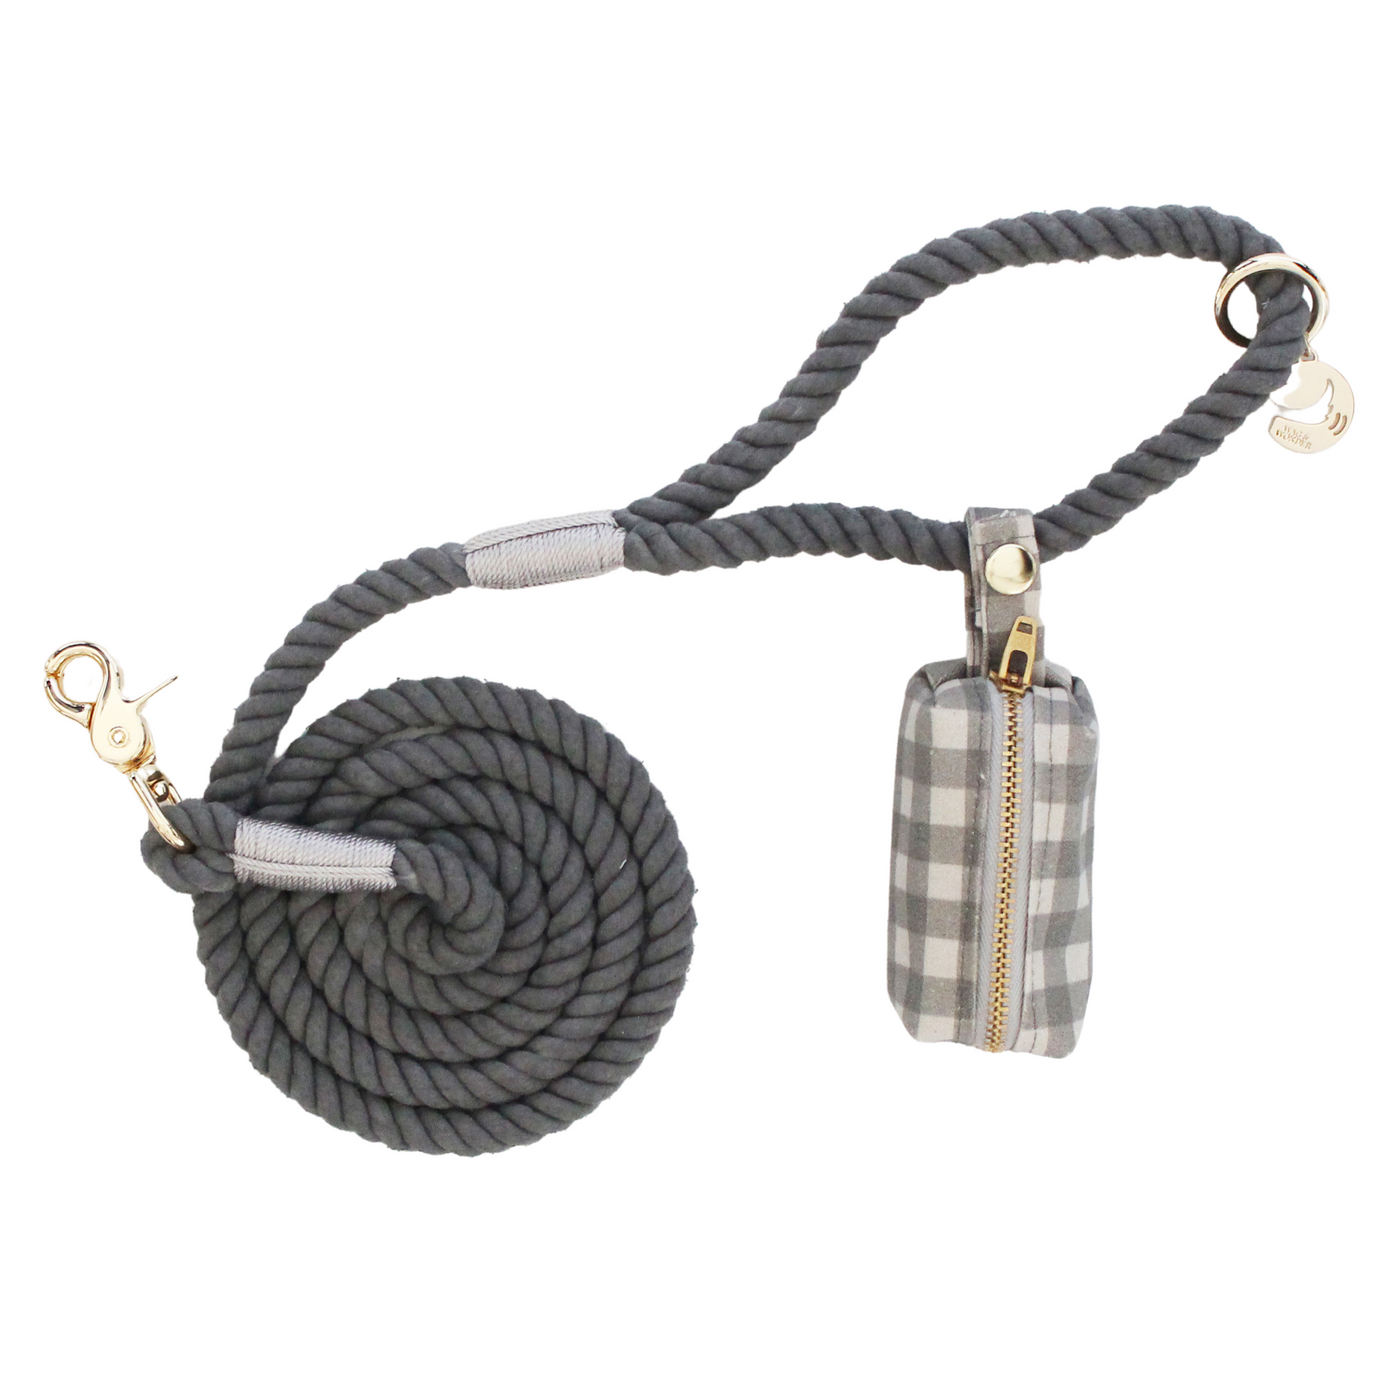 Stone Rope Dog Leash +Mountain Stone Waste Bag Holder